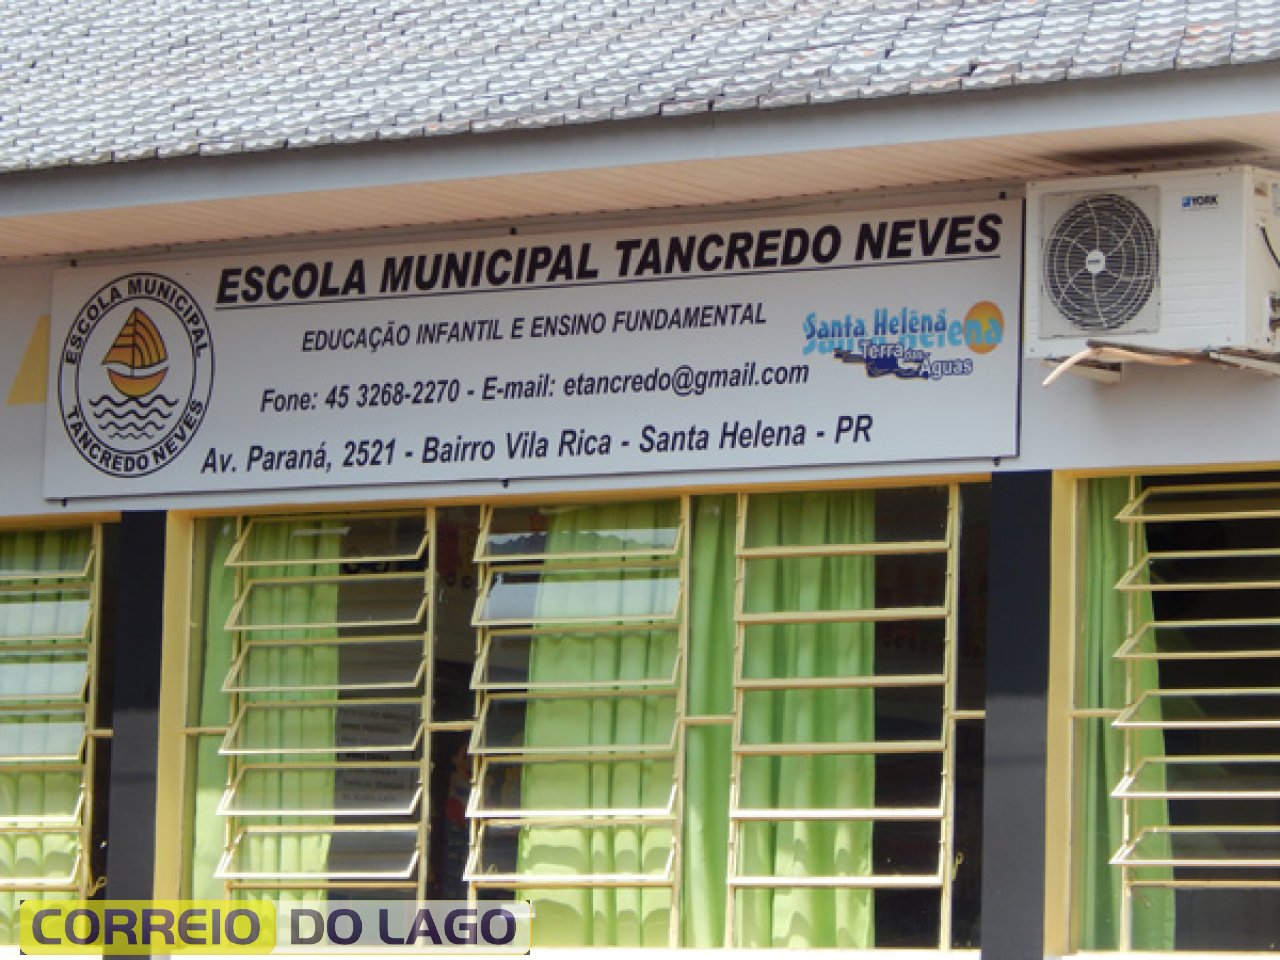 Escola Municipal Tancredo Neves SH. Nesta instituição de ensino trabalhou por 12 anos a Sra. Sônia